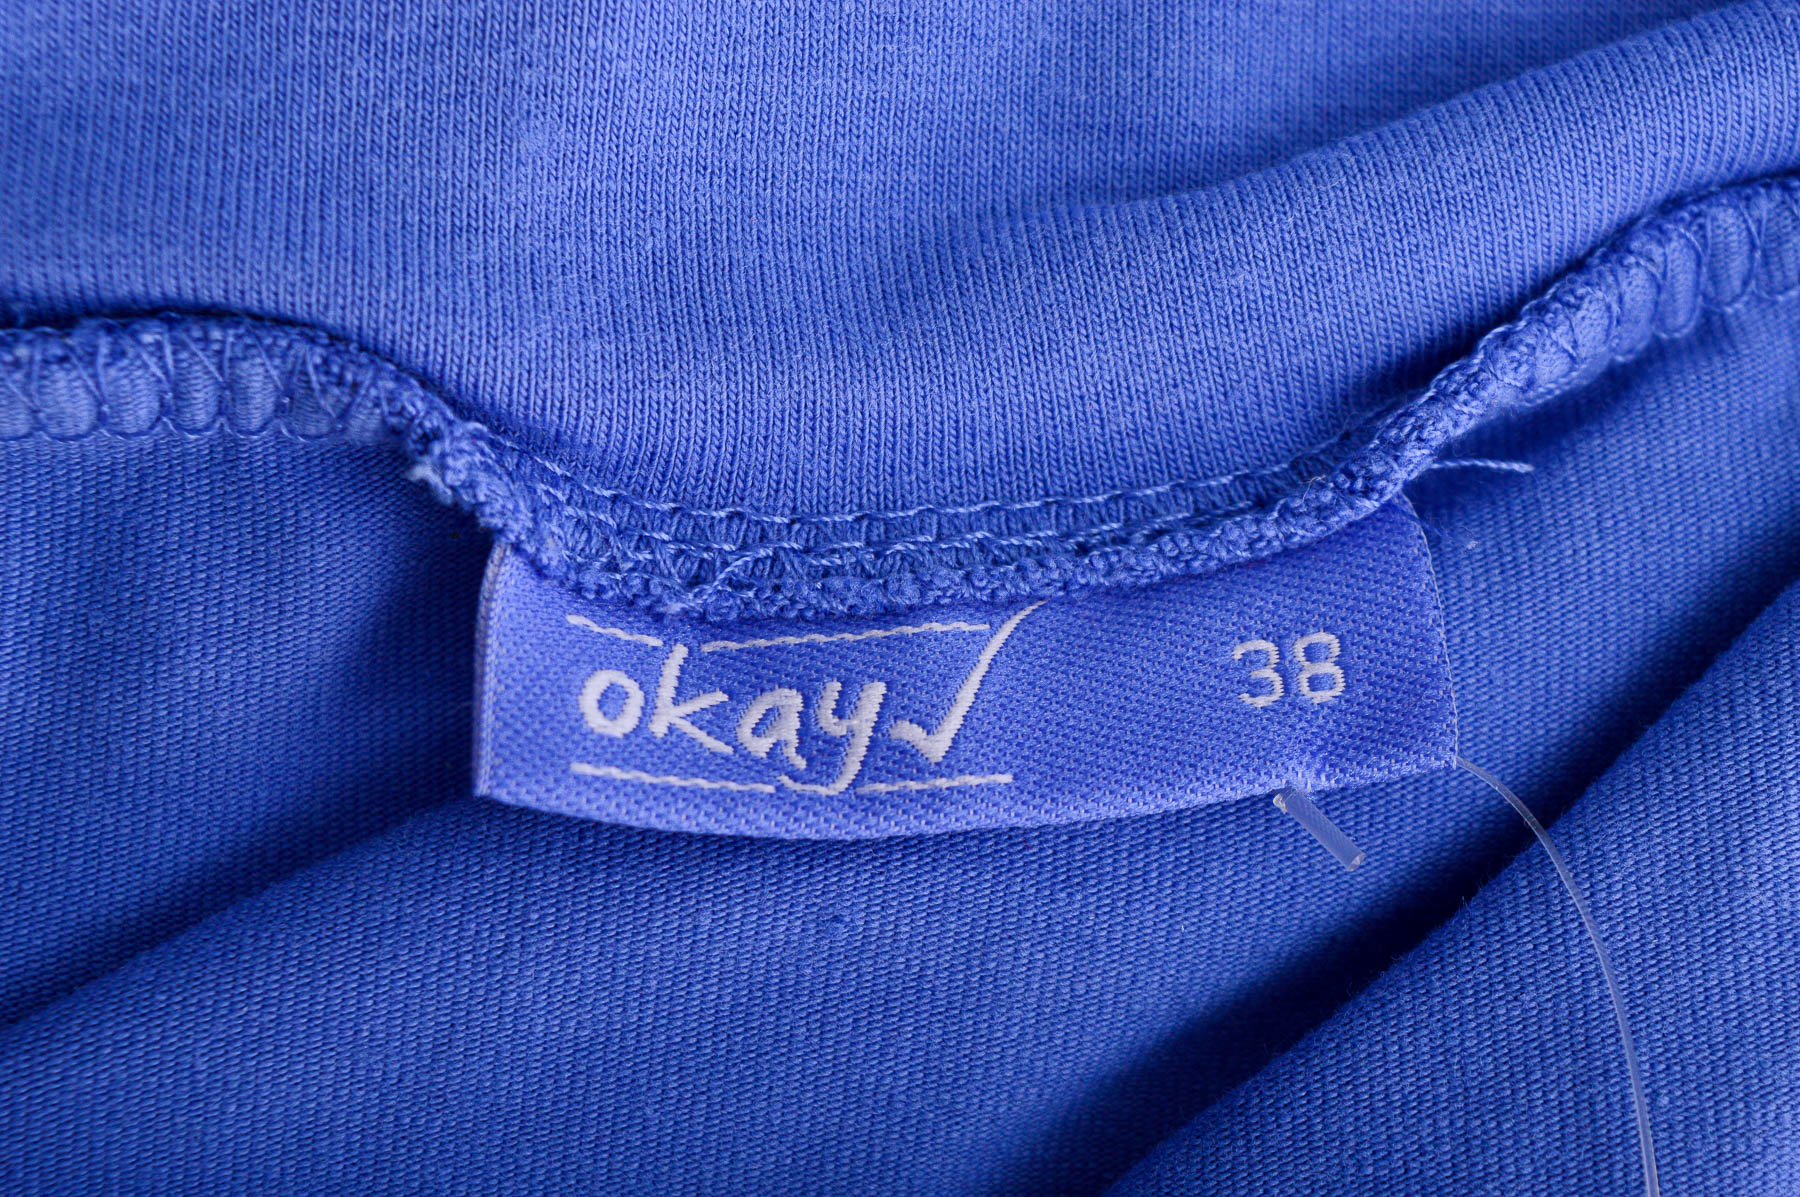 Skirt - Okay - 2